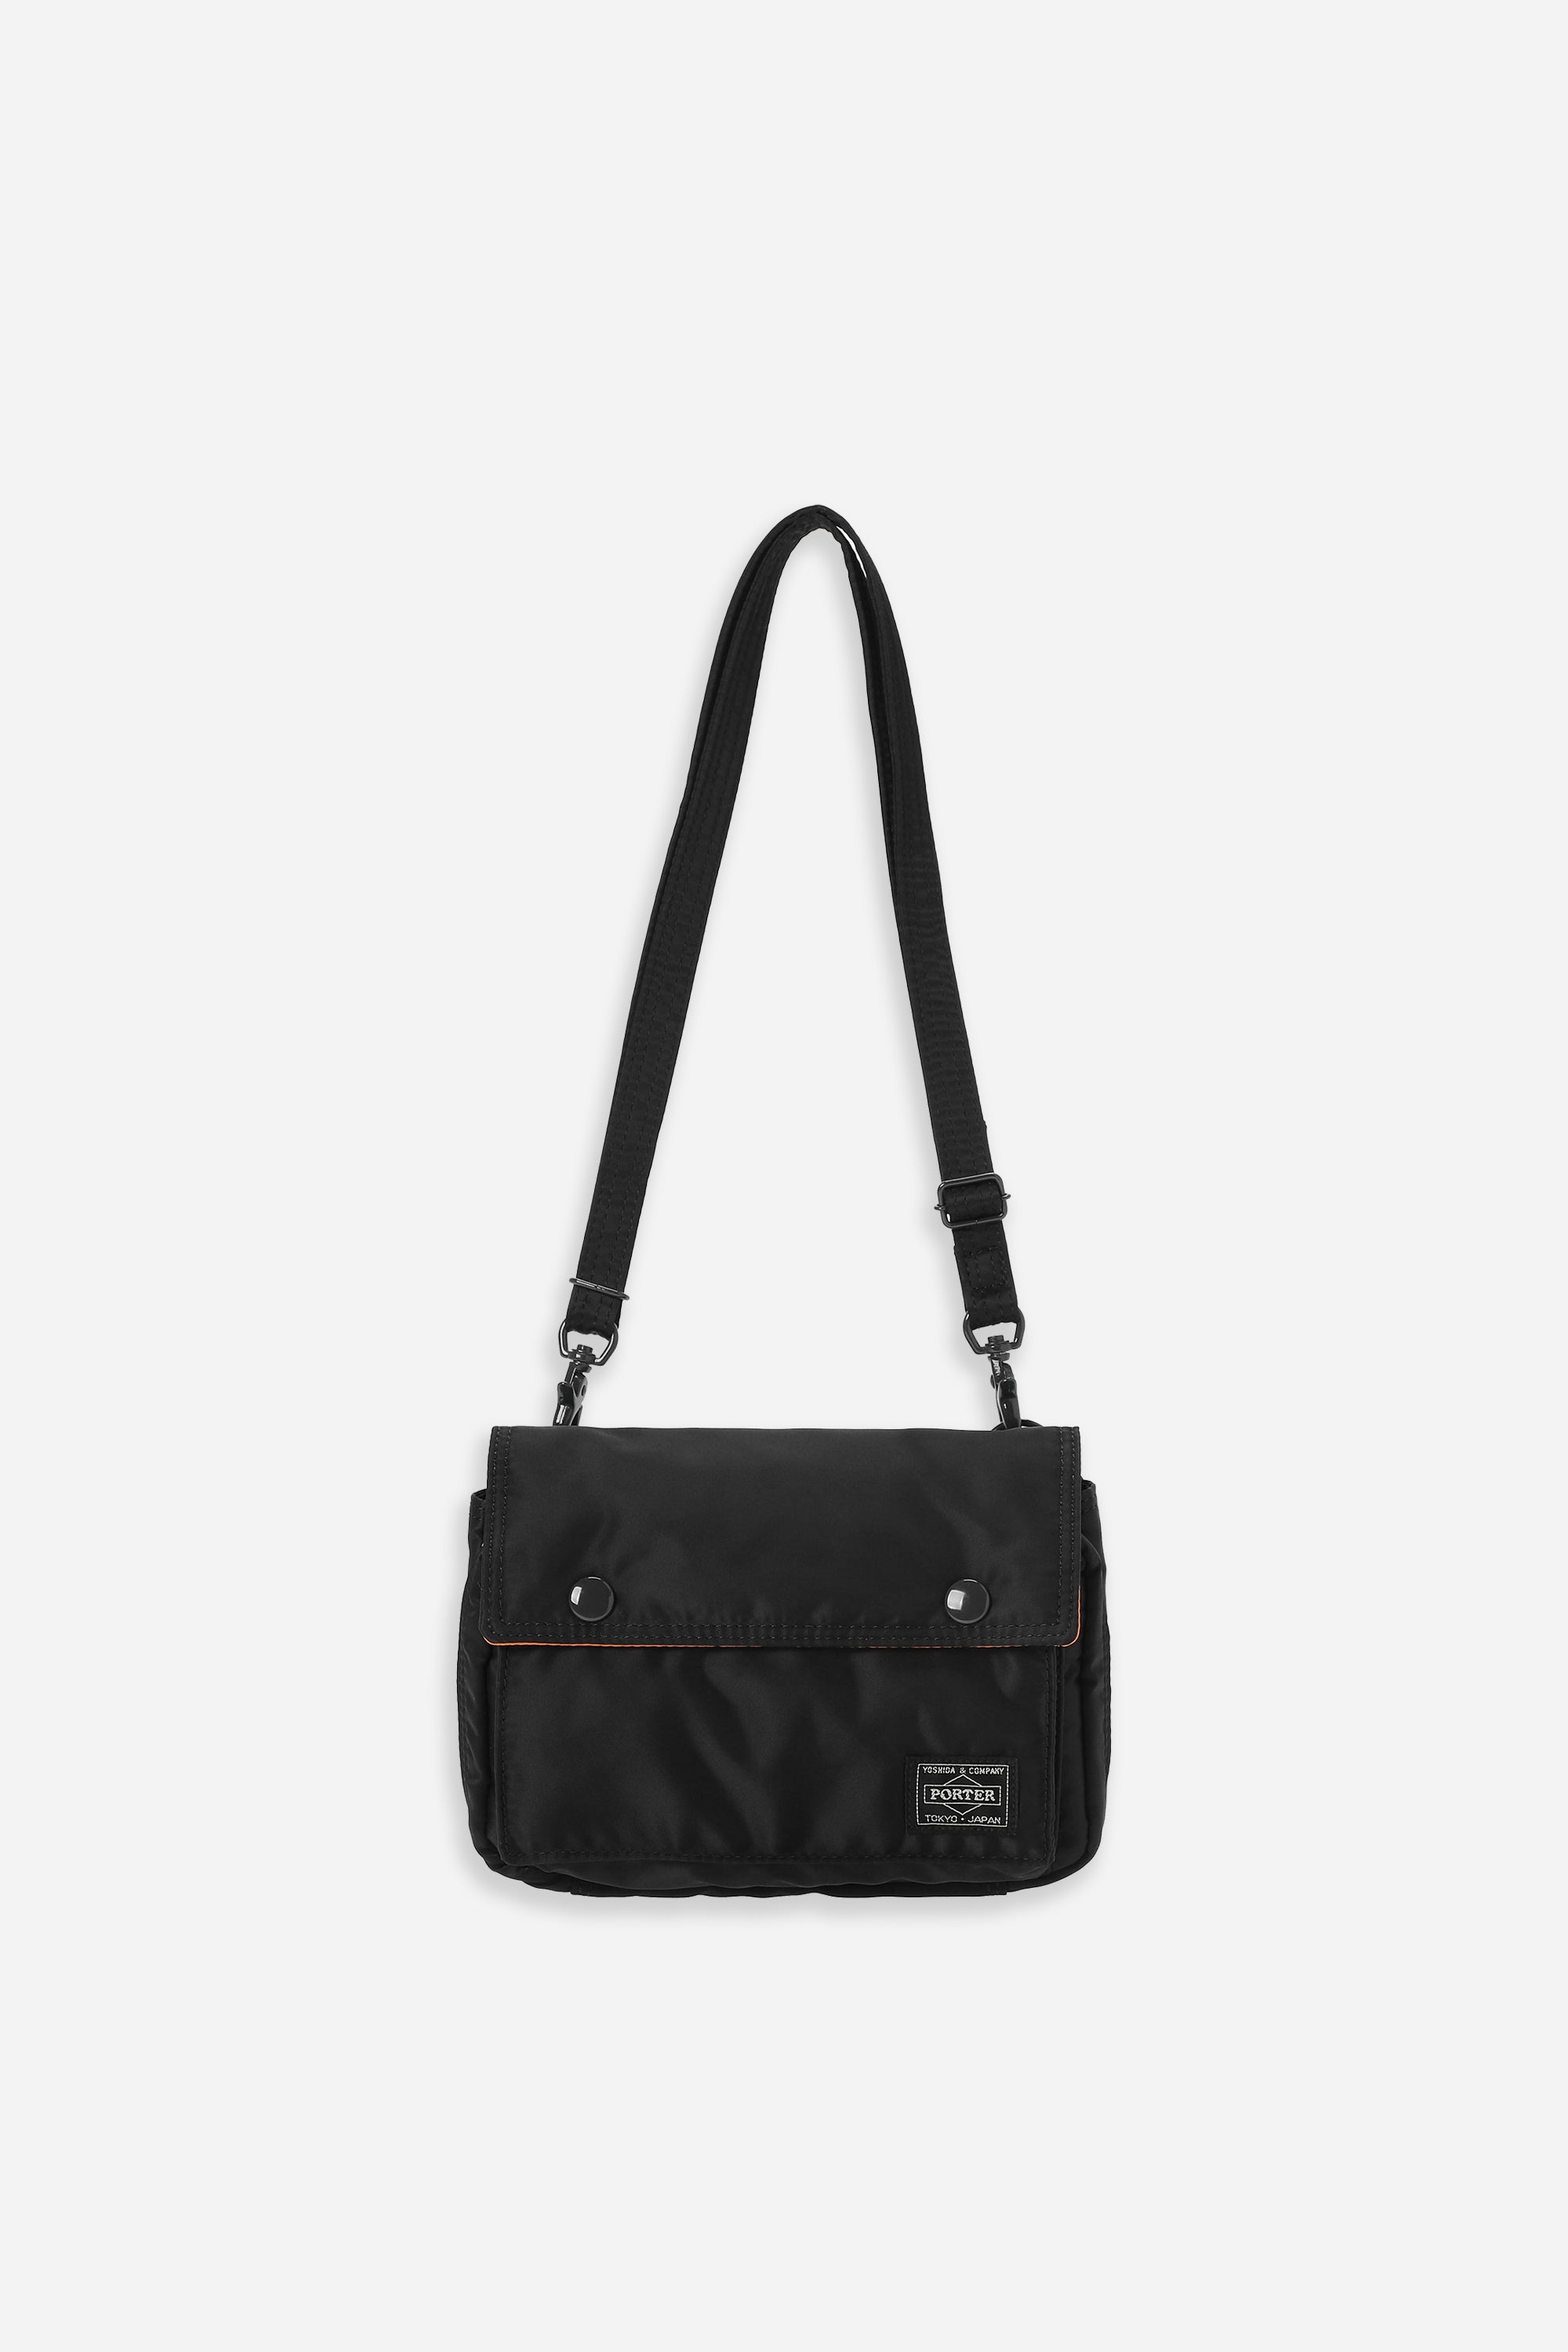 TANKER Clip Shoulder Bag Black by Porter Yoshida & Co